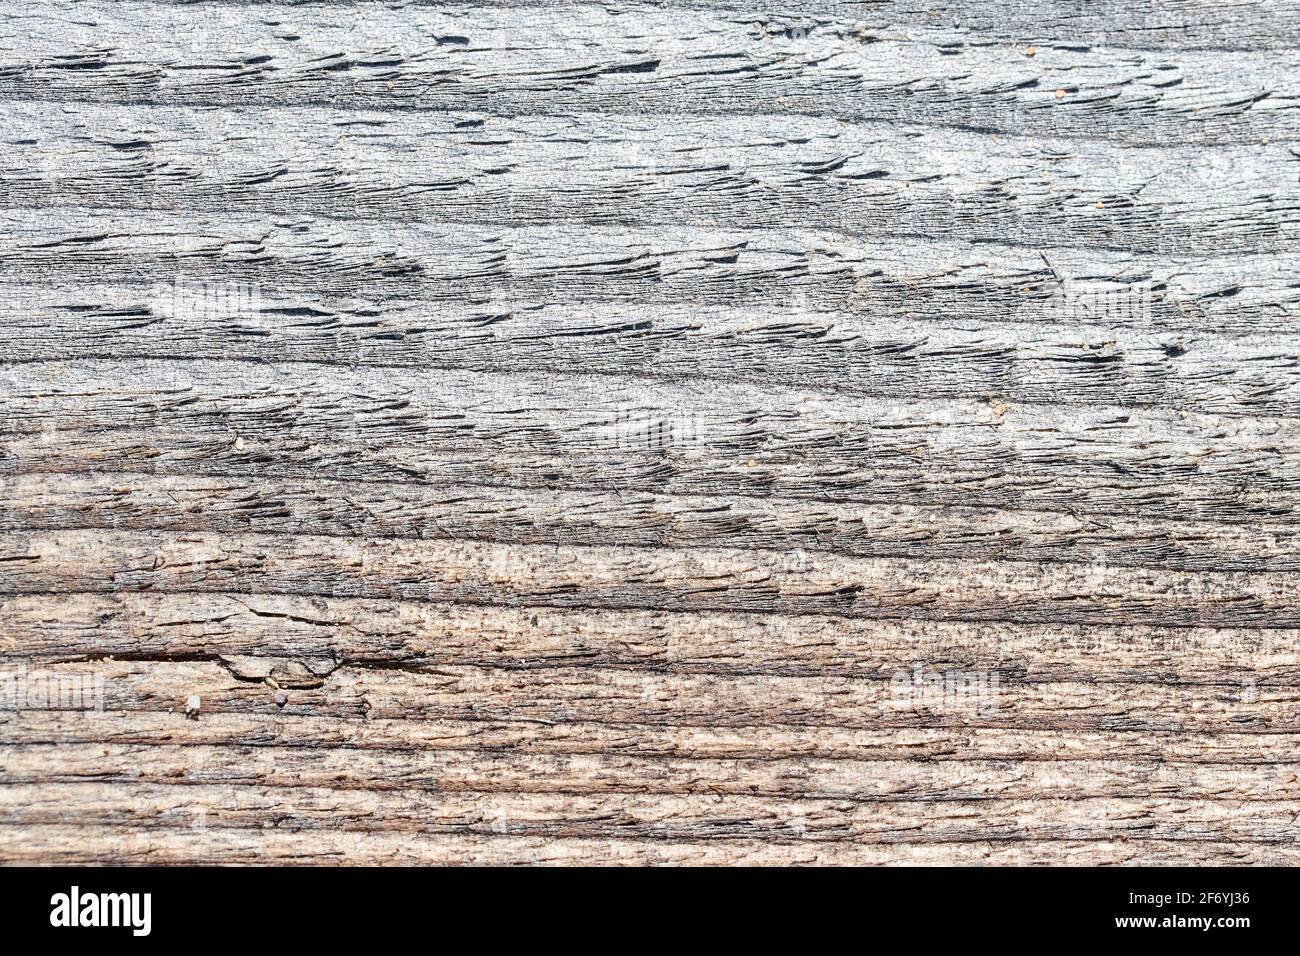 Vecchio grigio e marrone sabbia intemperie lavato tessuto di legno contaminato con crepe orizzontali anelli annuali e grani di sabbia del fiume. Primo piano con texture naturali Foto Stock